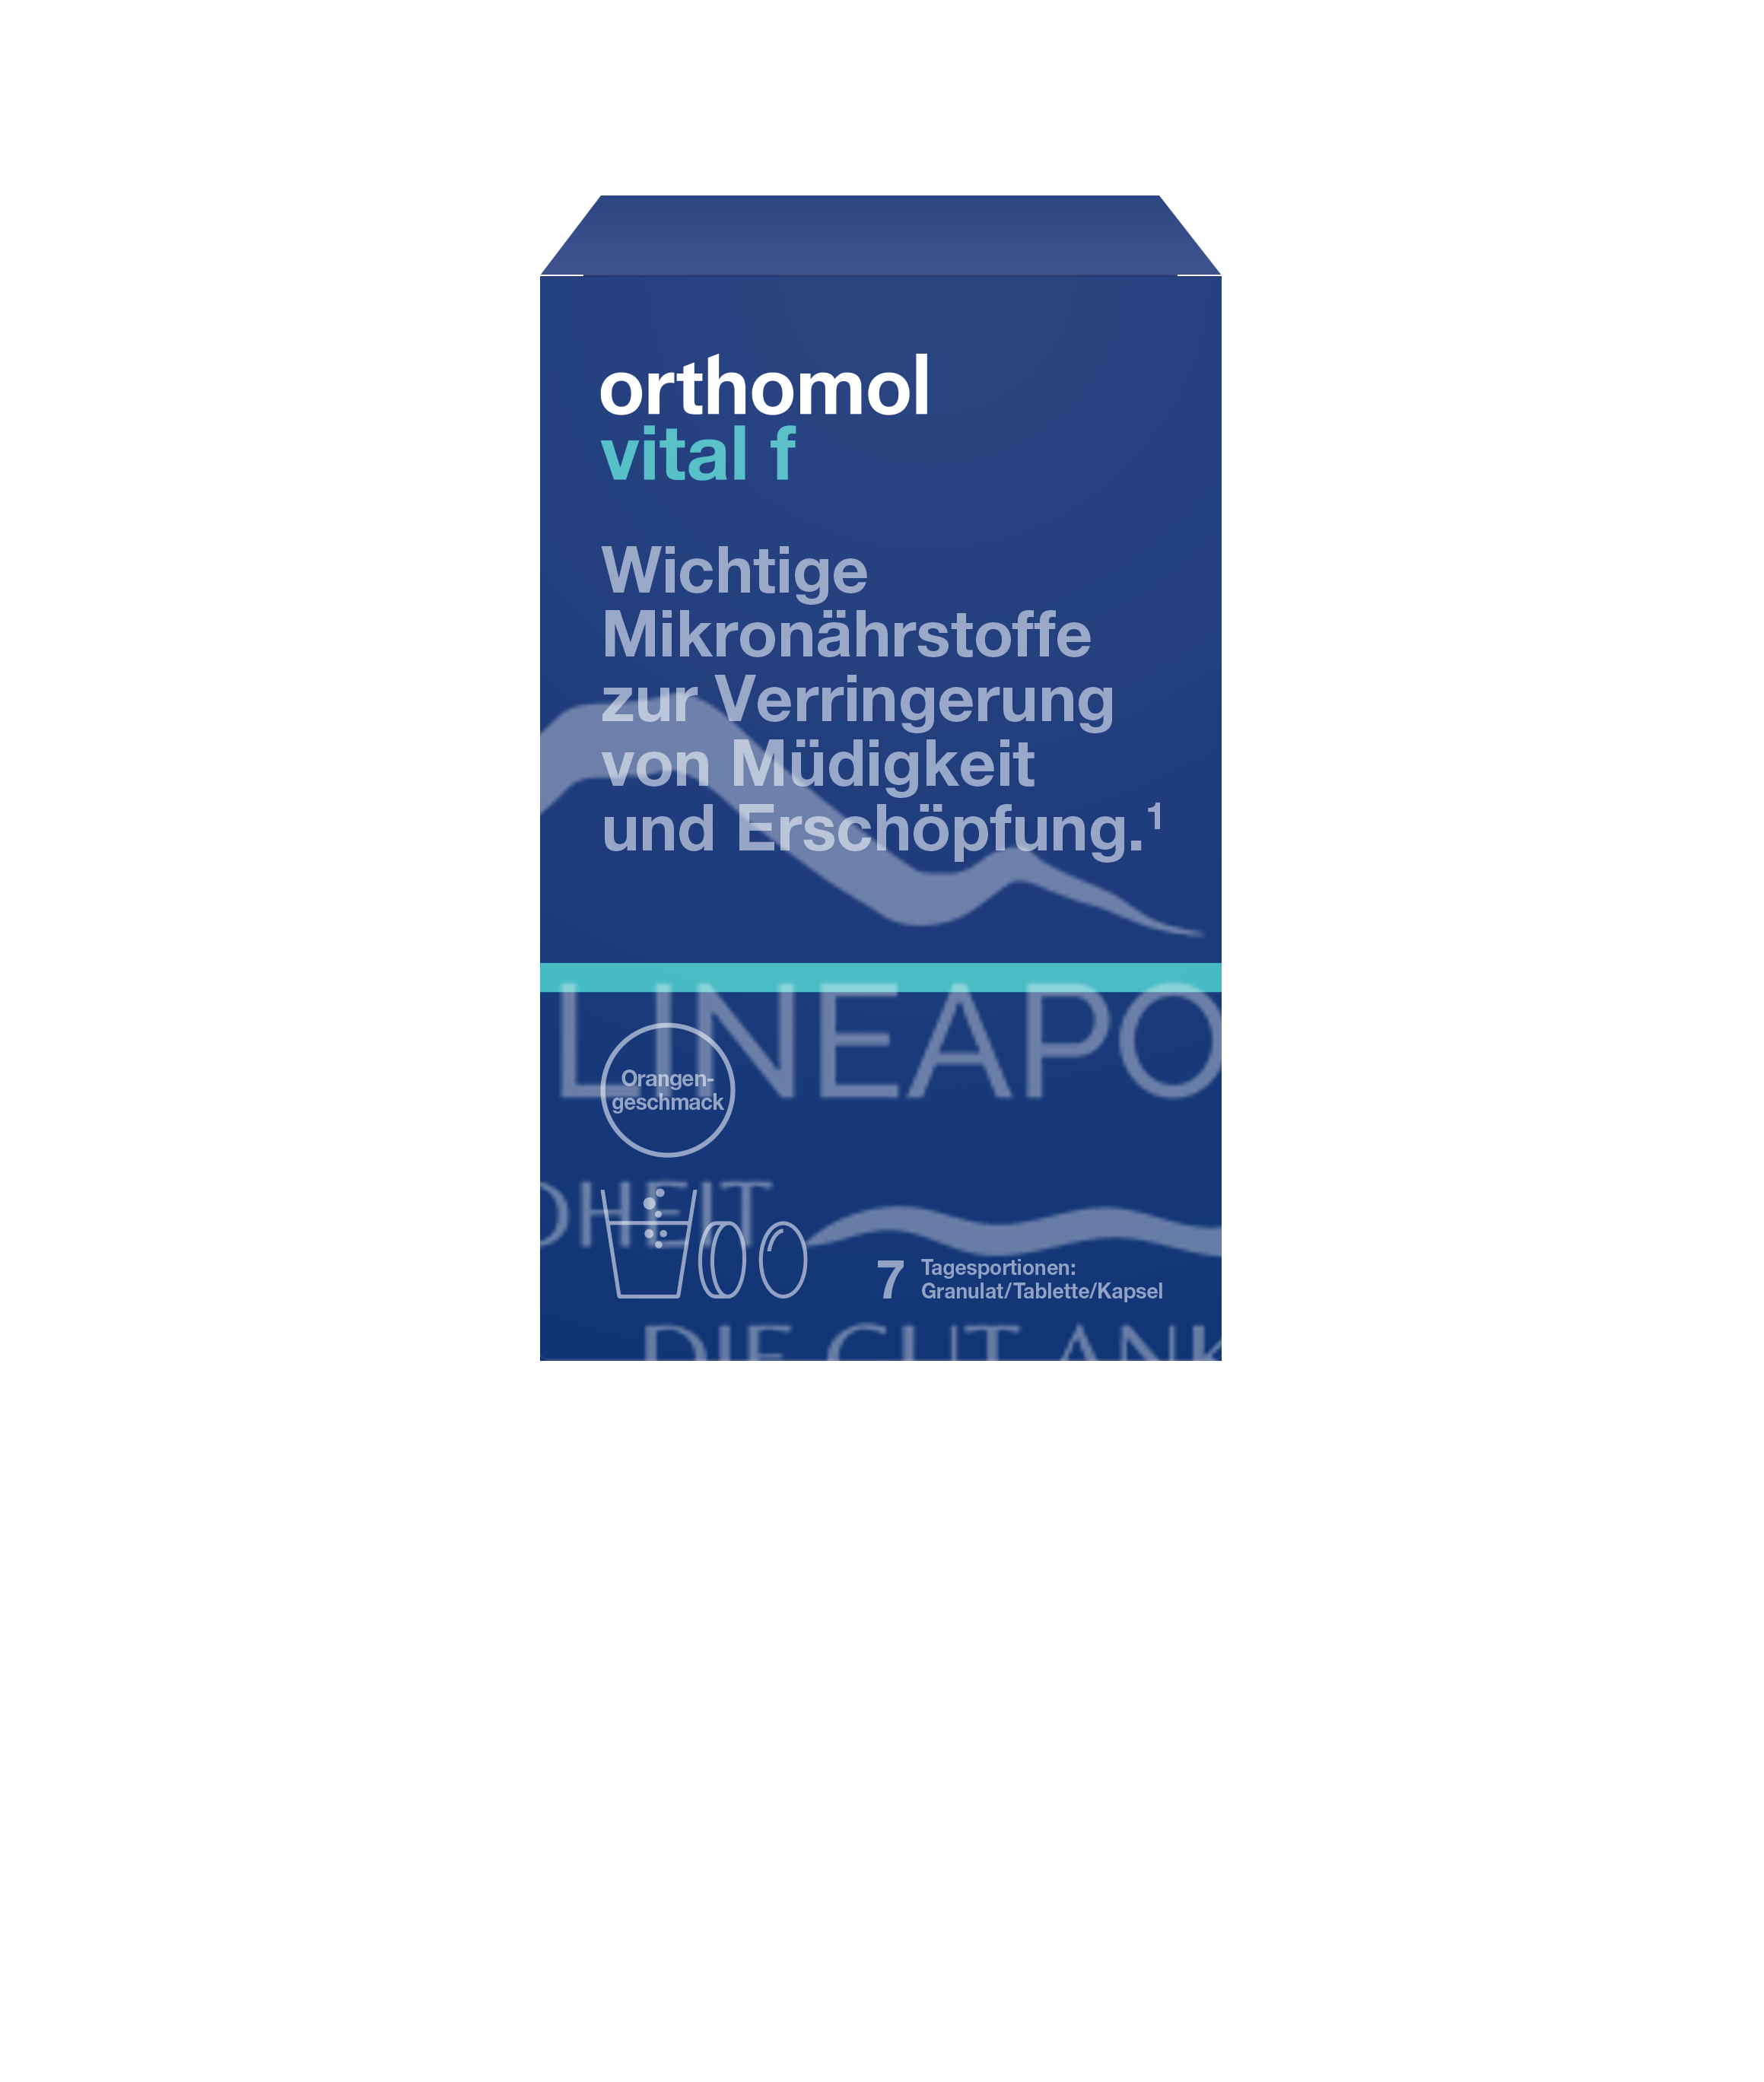 Orthomol Vital F Granulat + Tablette + Kapsel